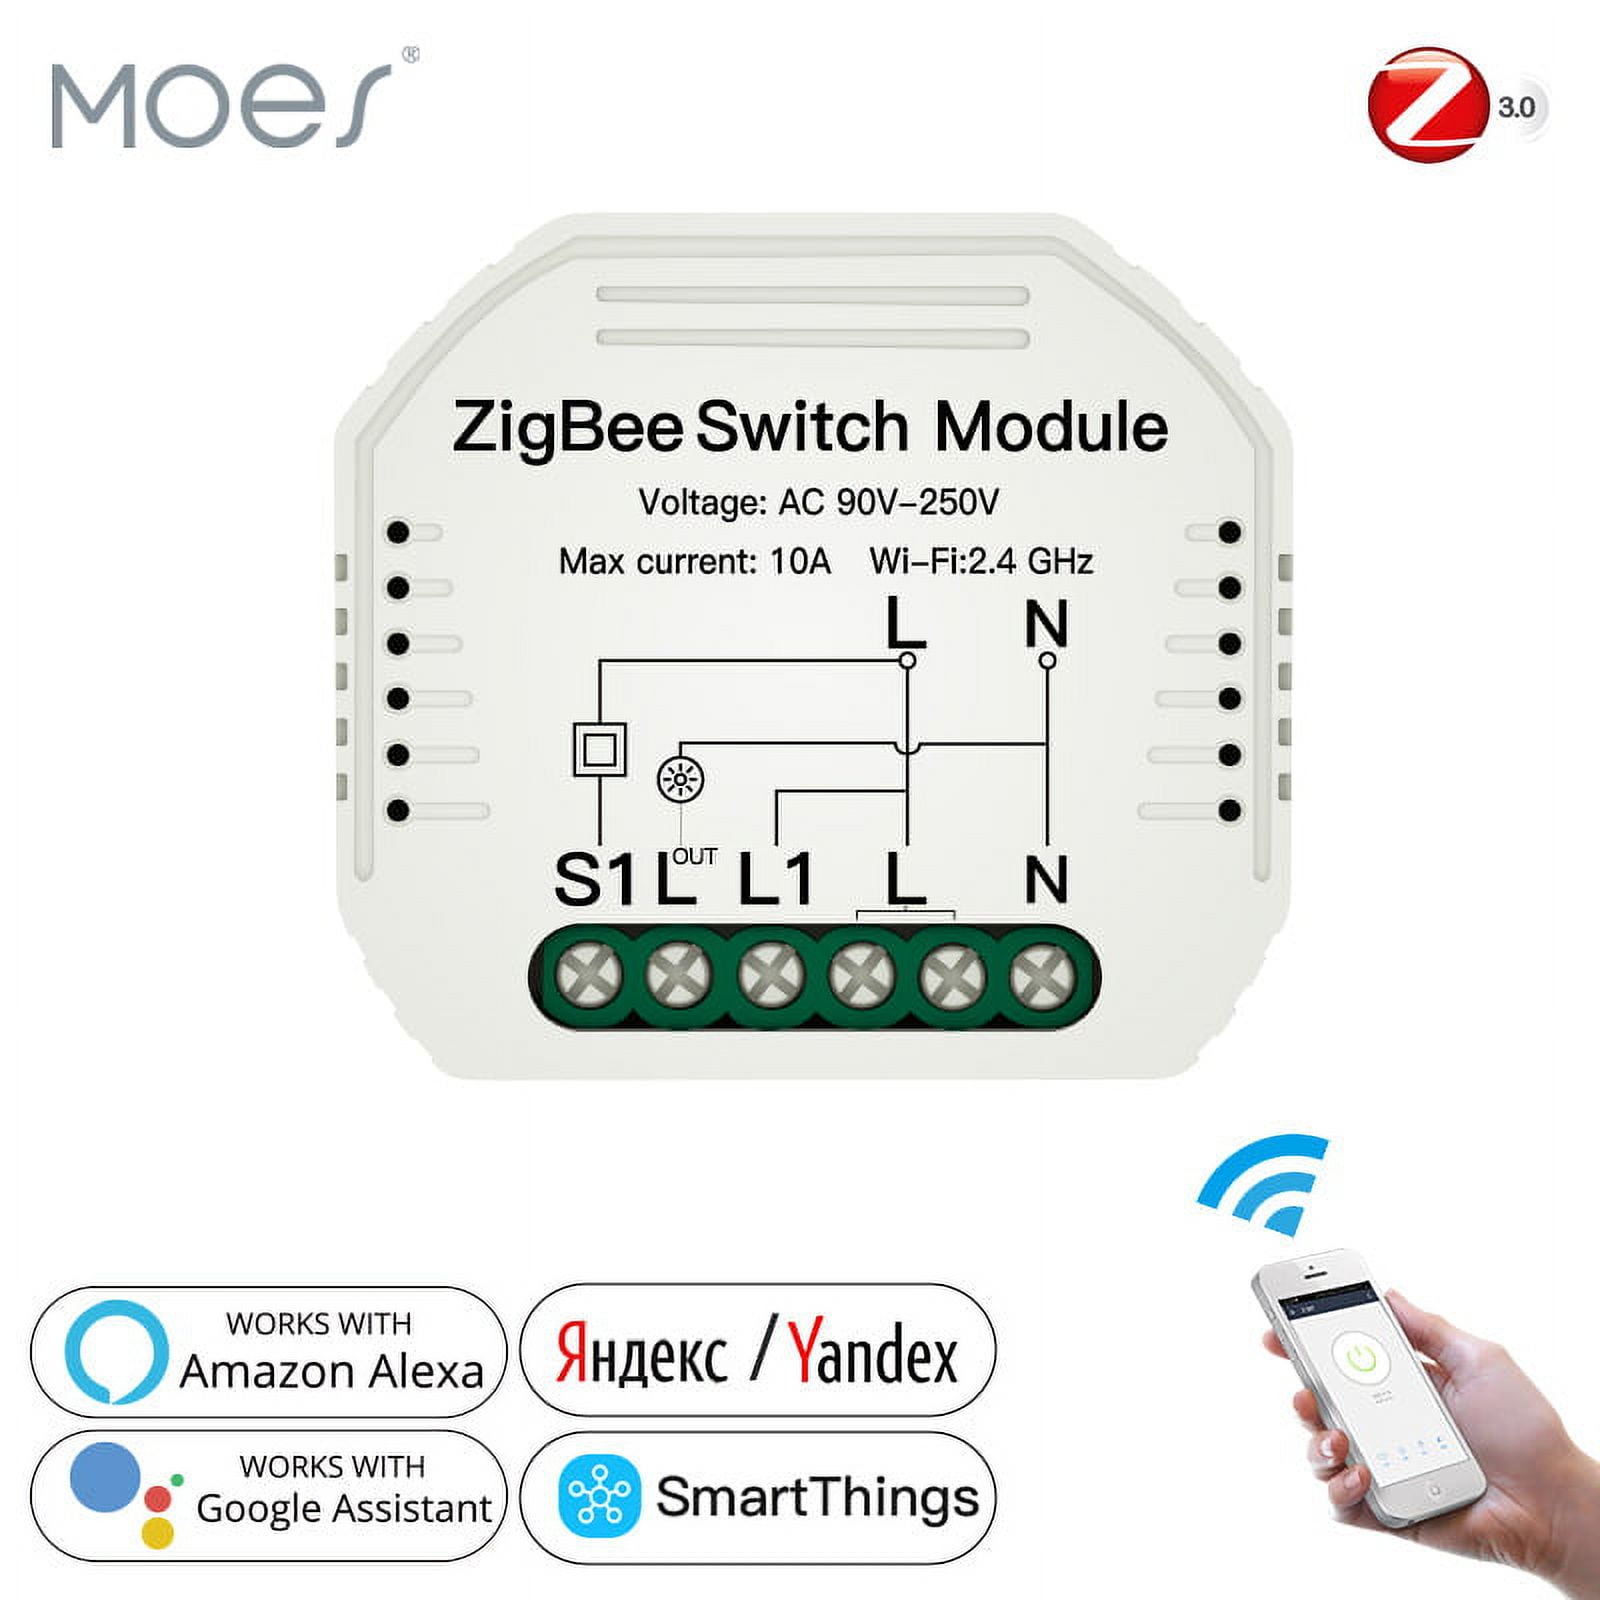 Moes Zigbee Smart Switch Module para luz, bricolaje Puerto Rico